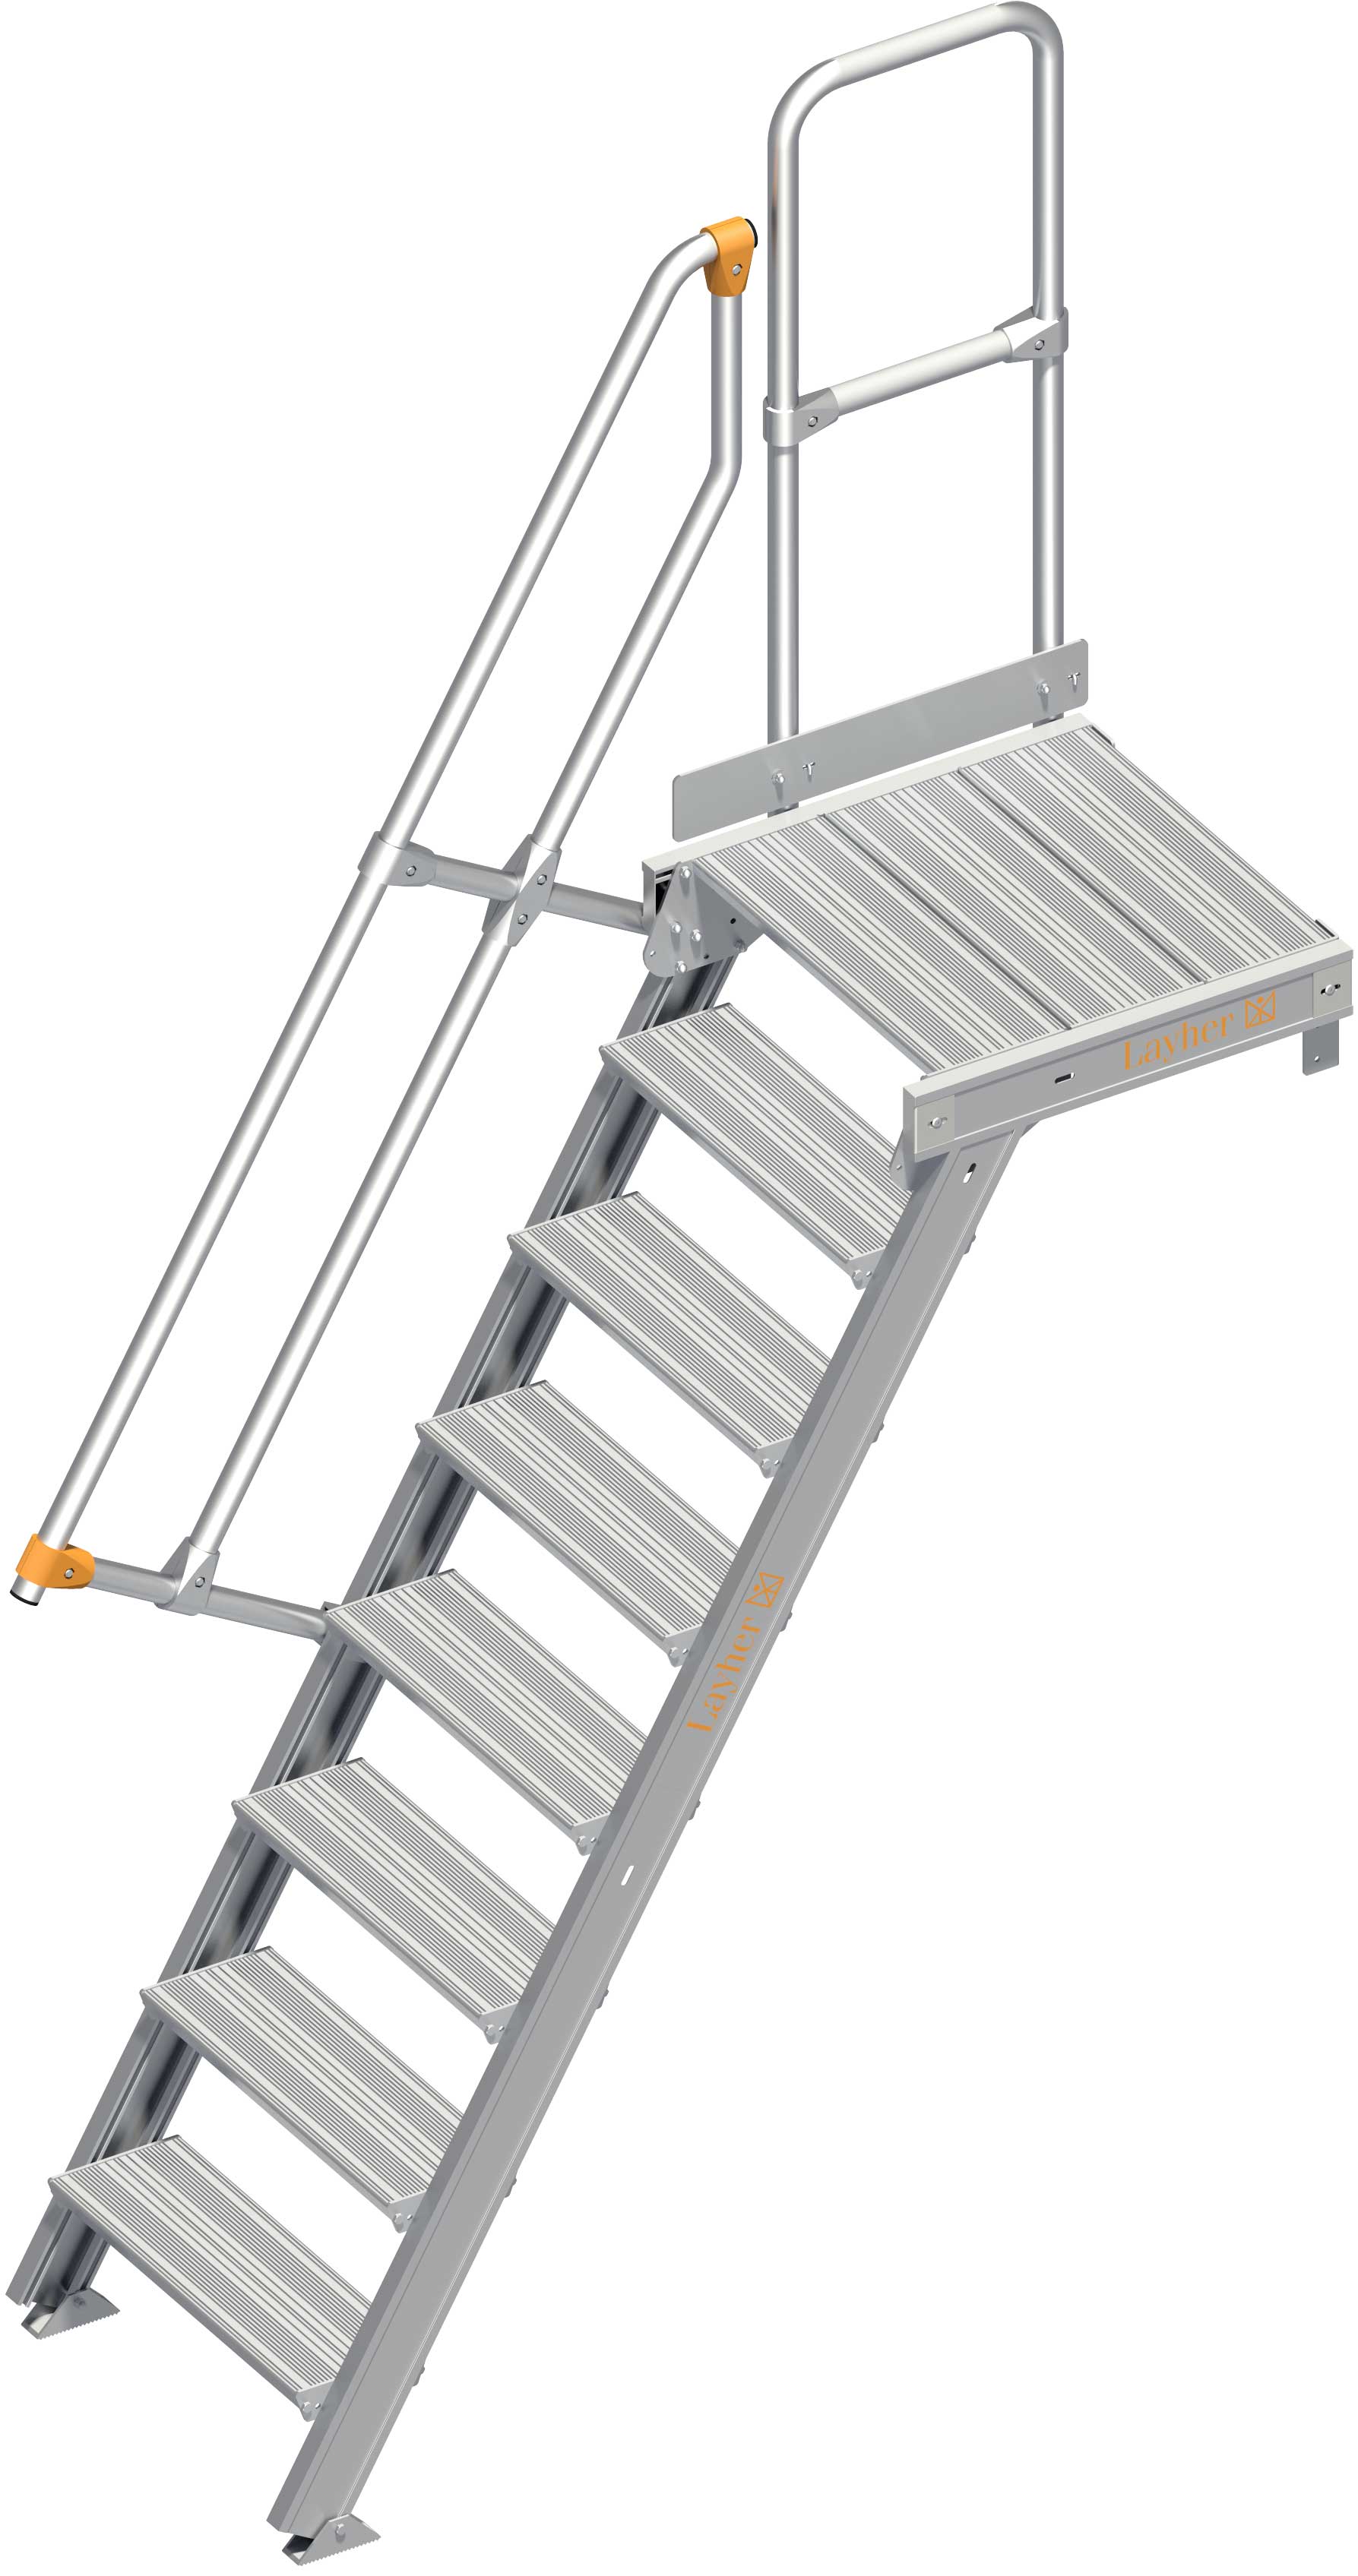 Layher Plattformtreppe 60° 8 Stufen - 600 mm breit